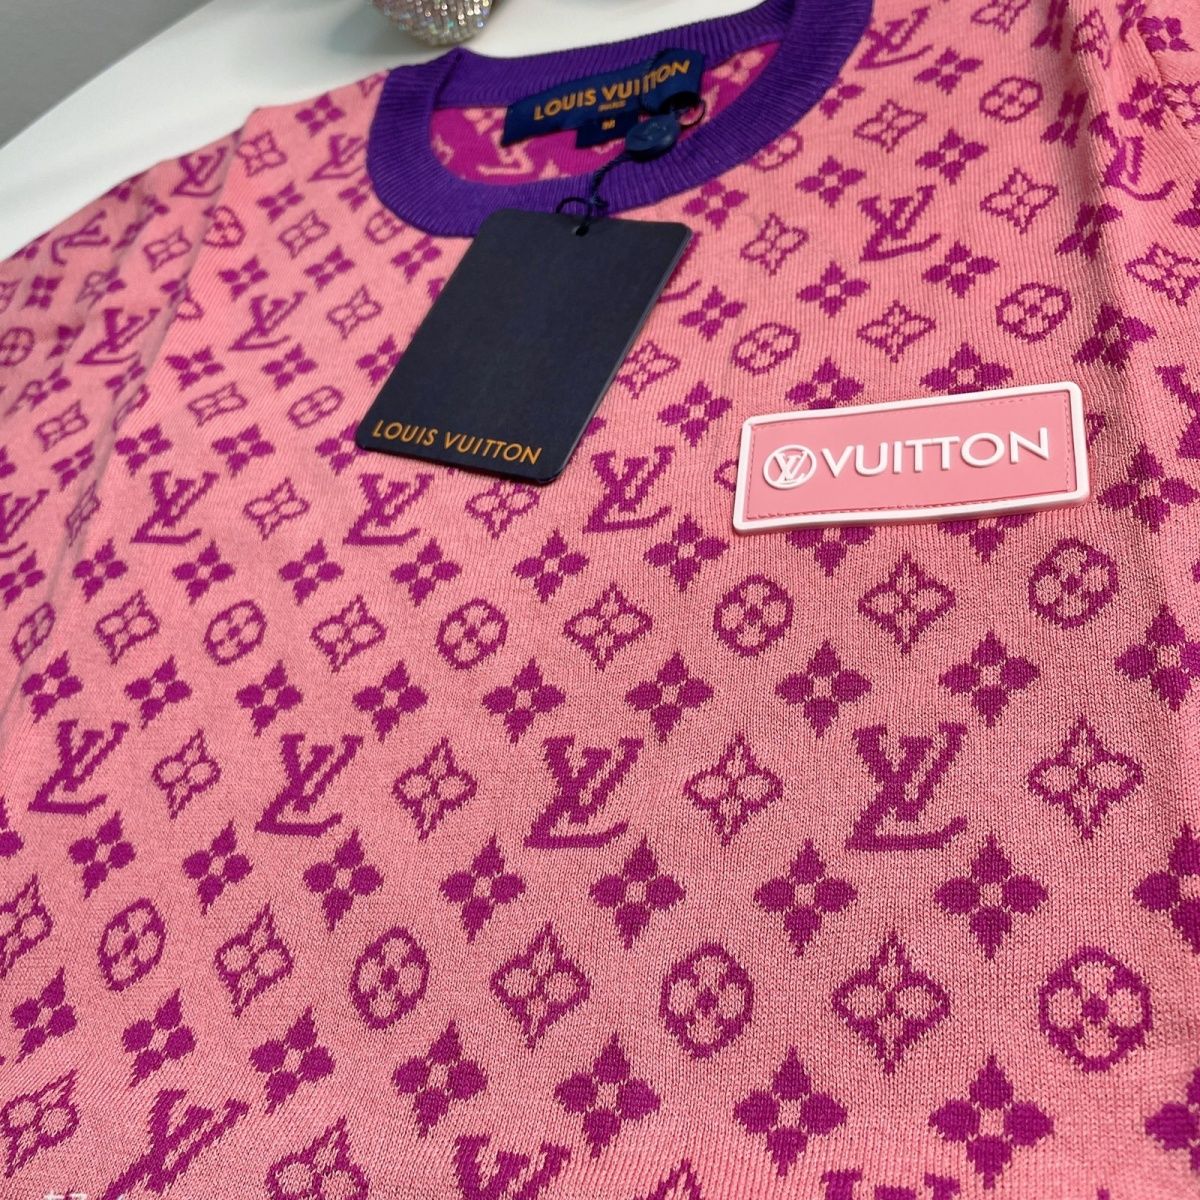 Louis Vuitton knitted/woolen top